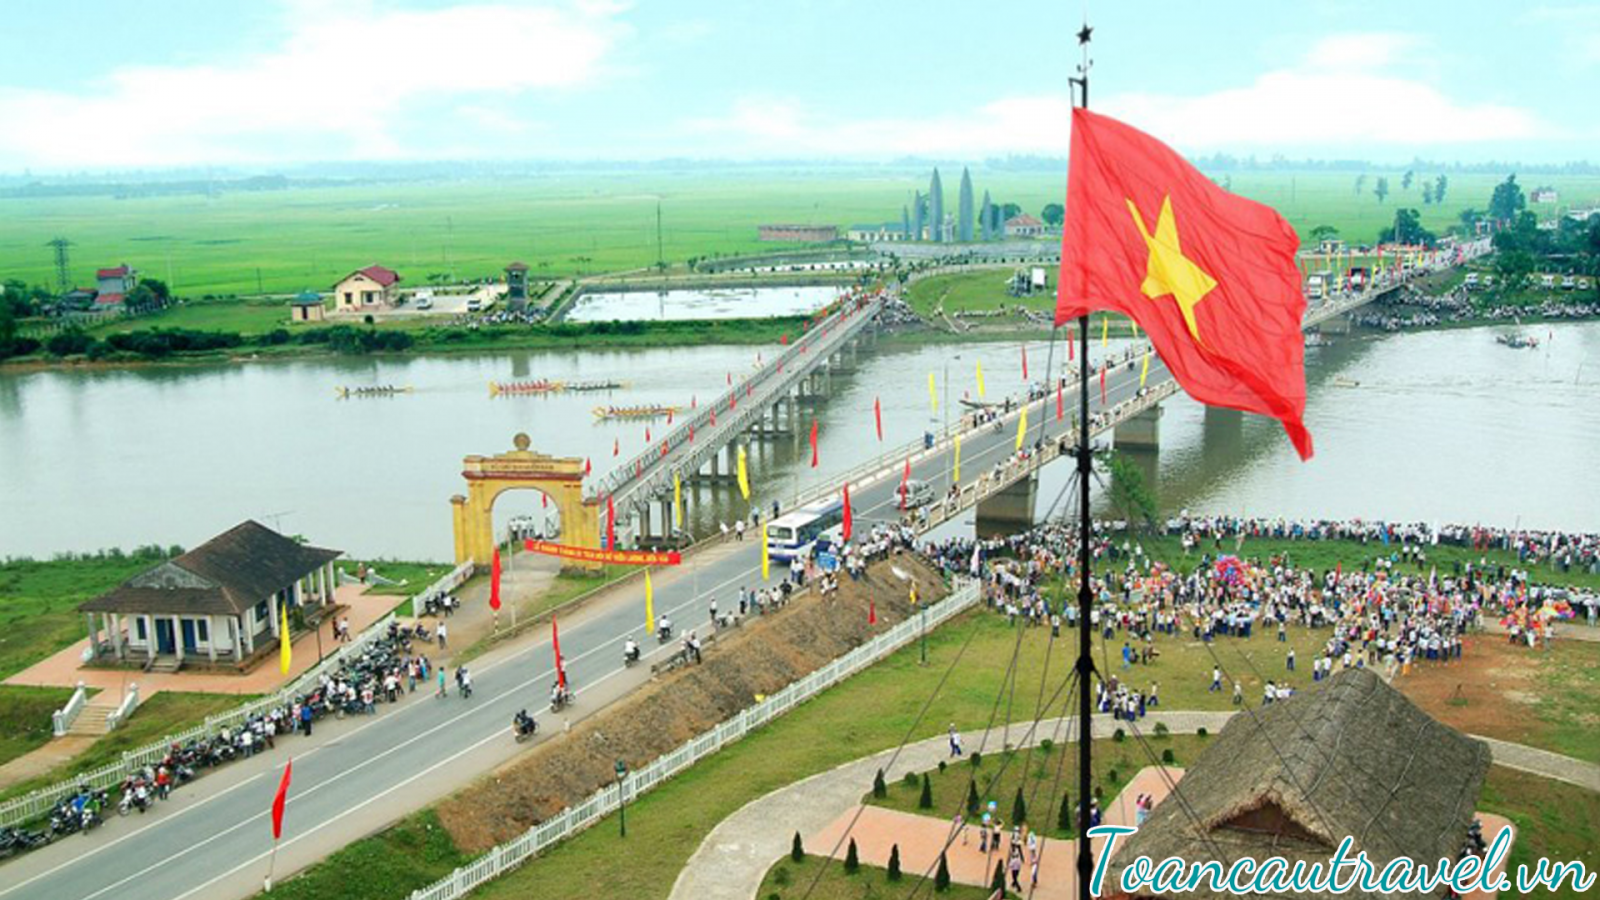 Sông Bến Hải – Cầu Hiền Lương